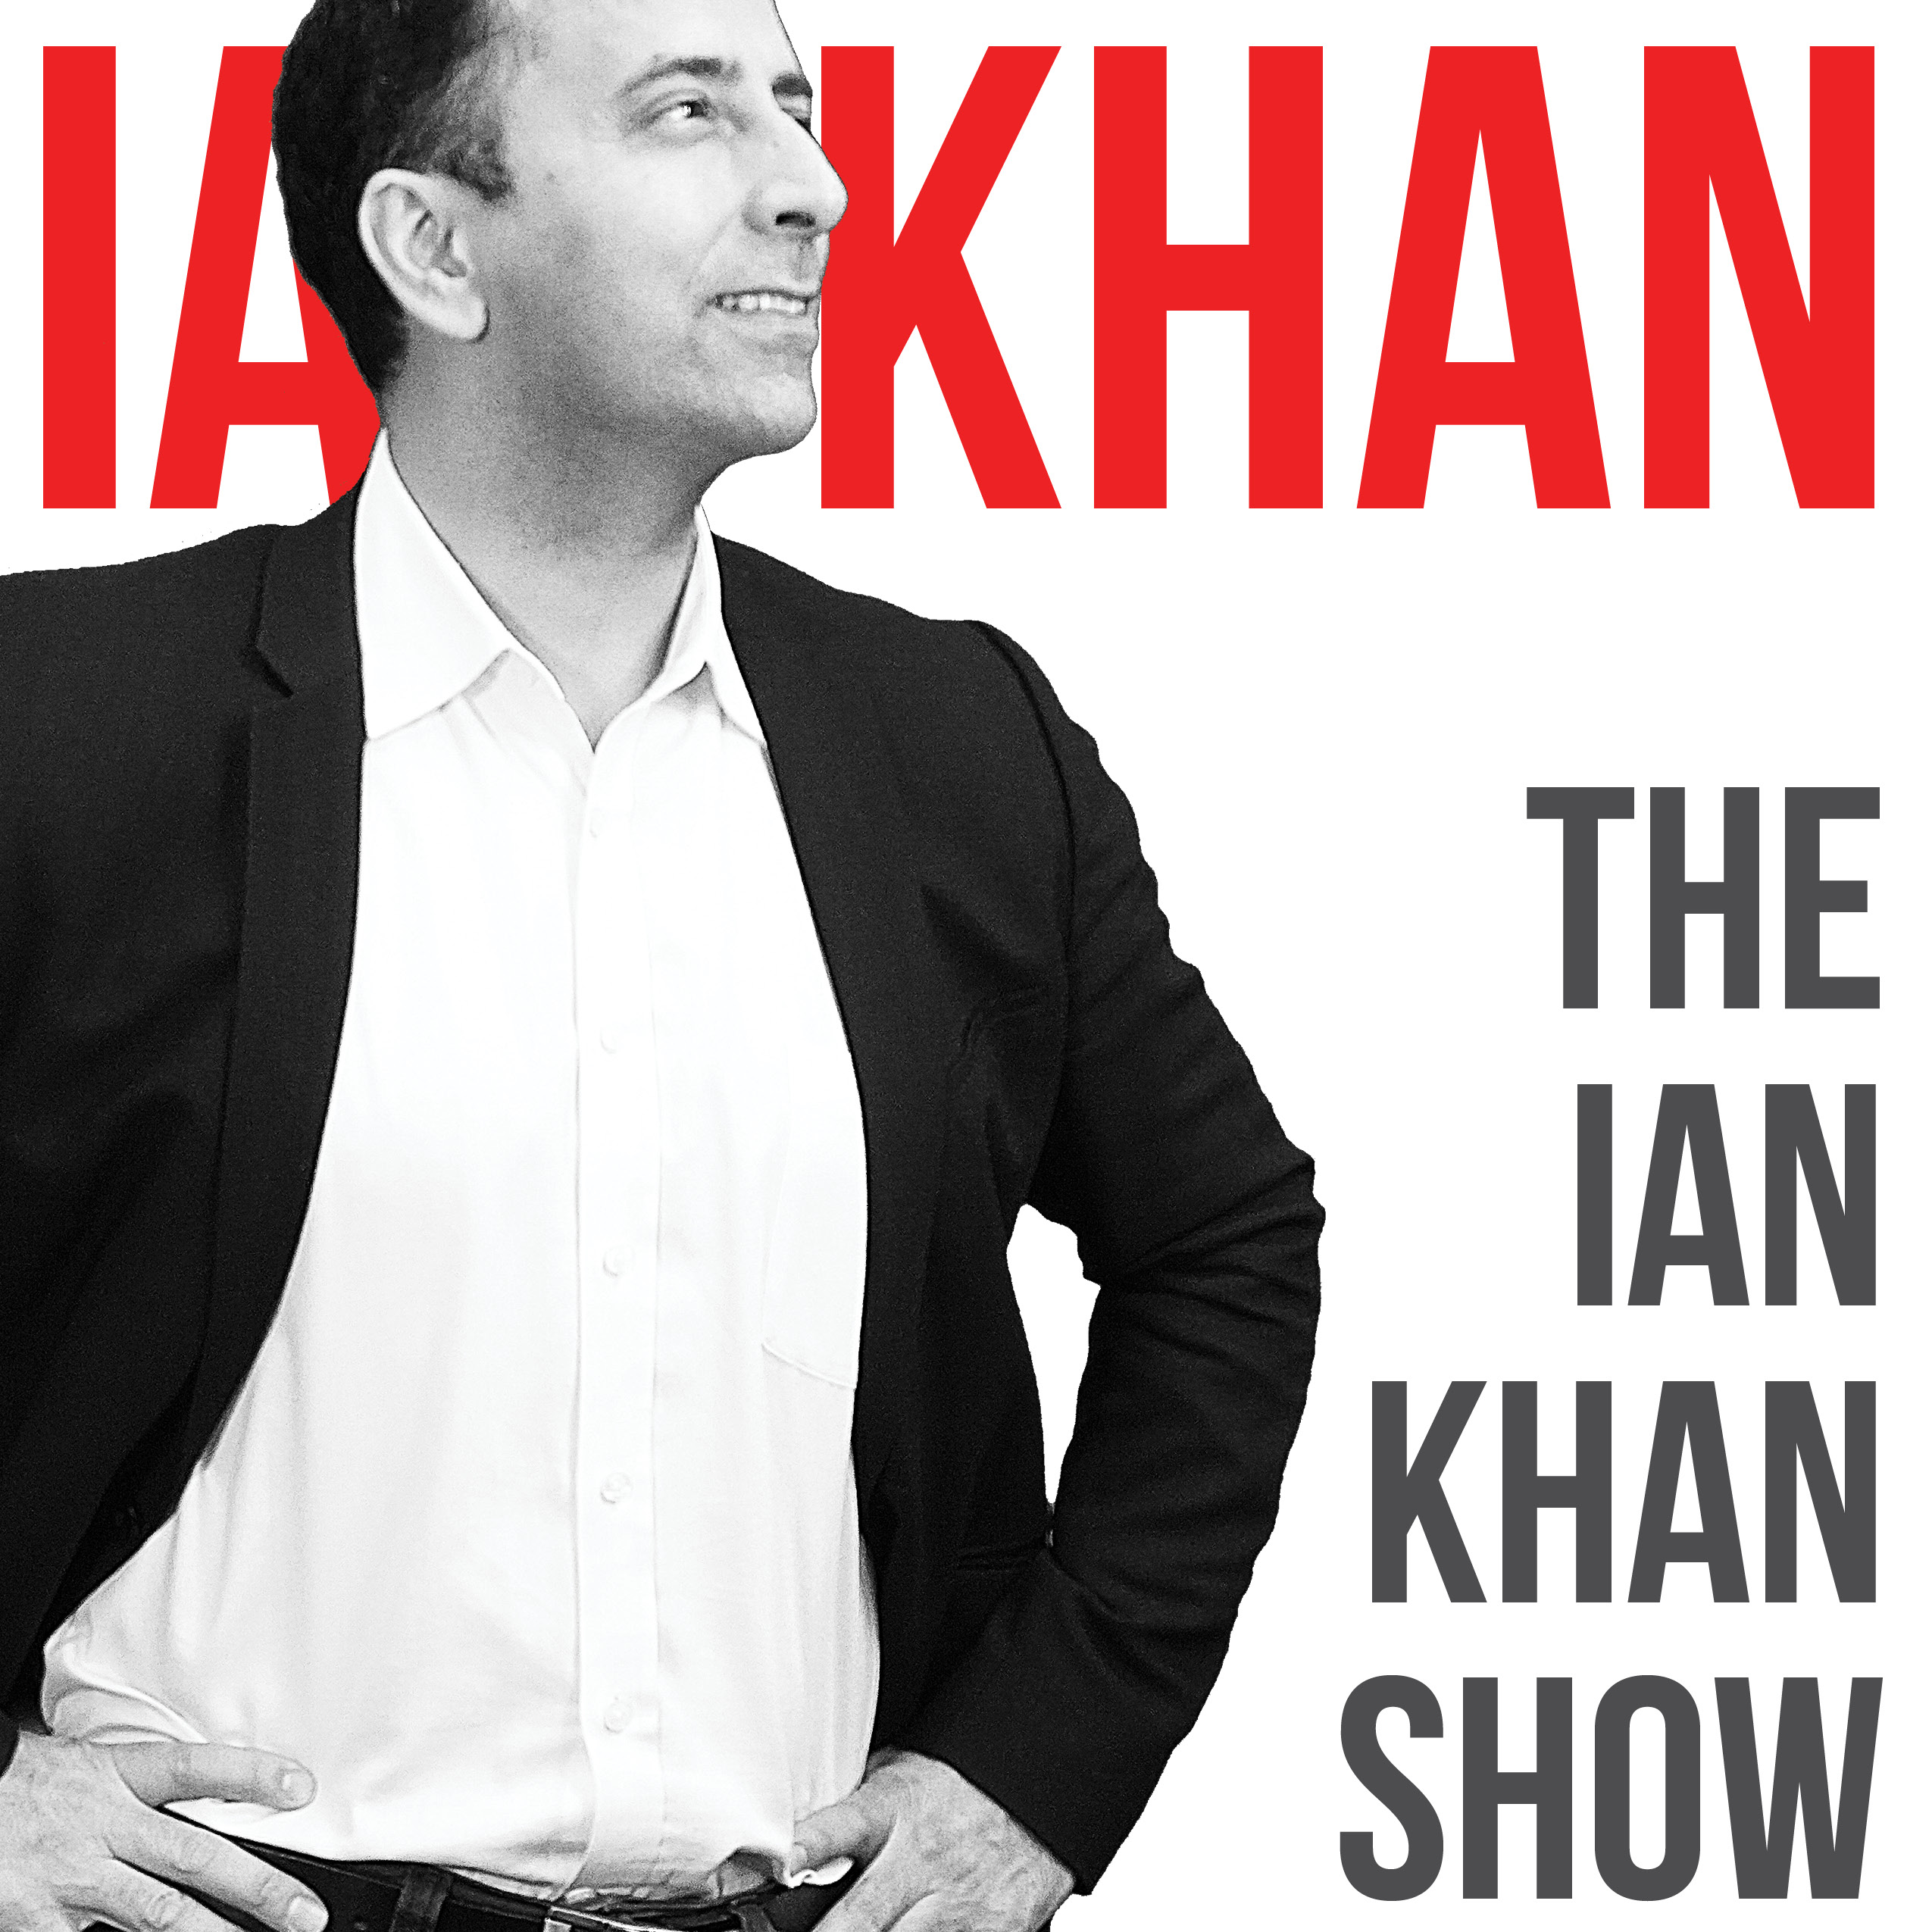 The Ian Khan Show